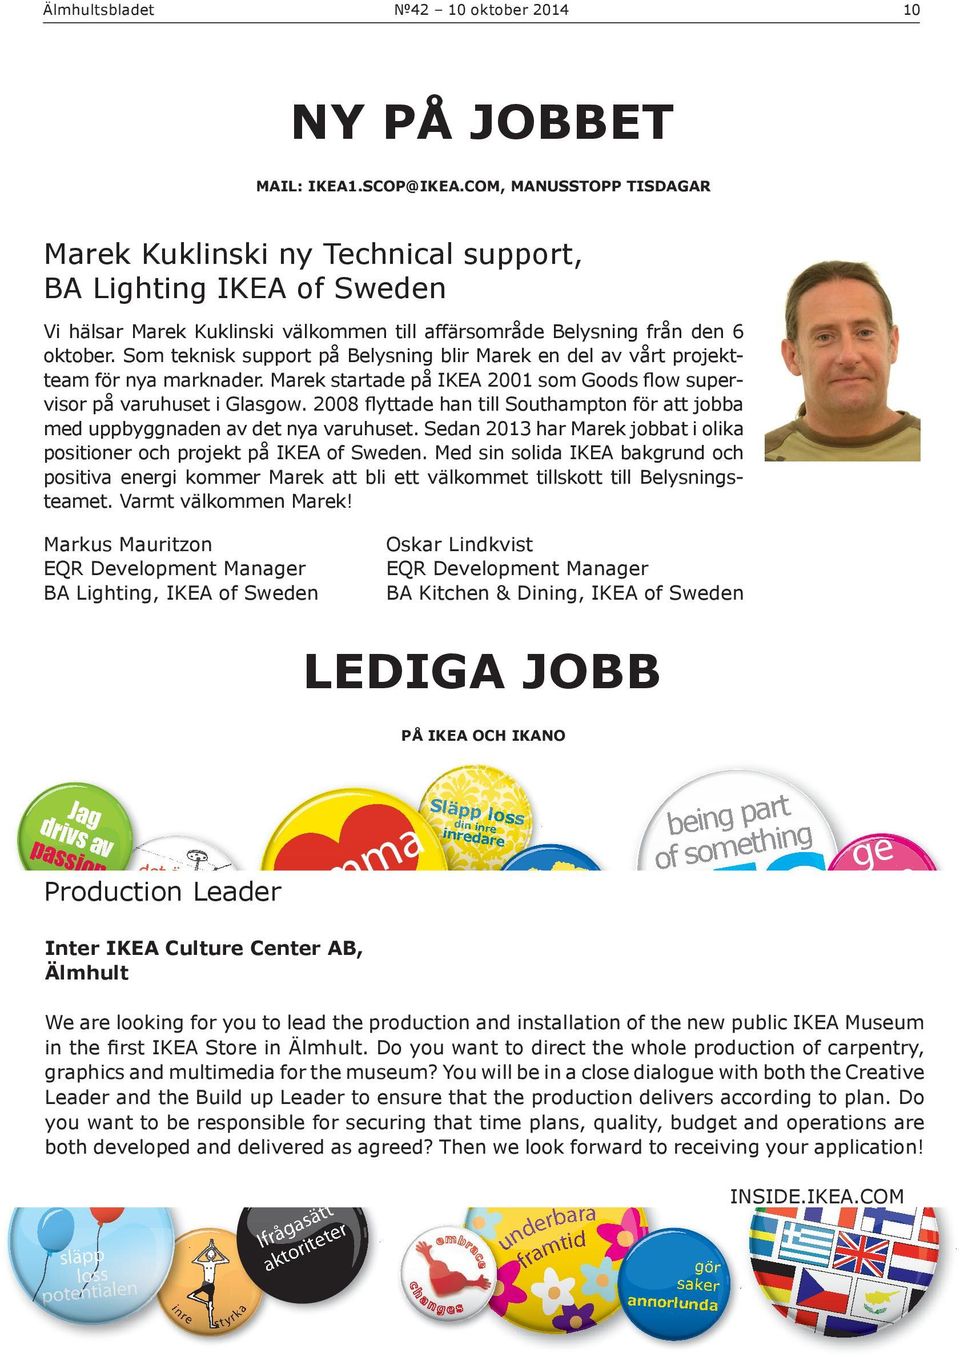 Som teknisk support på Belysning blir Marek en del av vårt projektteam för nya marknader. Marek startade på IKEA 2001 som Goods flow supervisor på varuhuset i Glasgow.